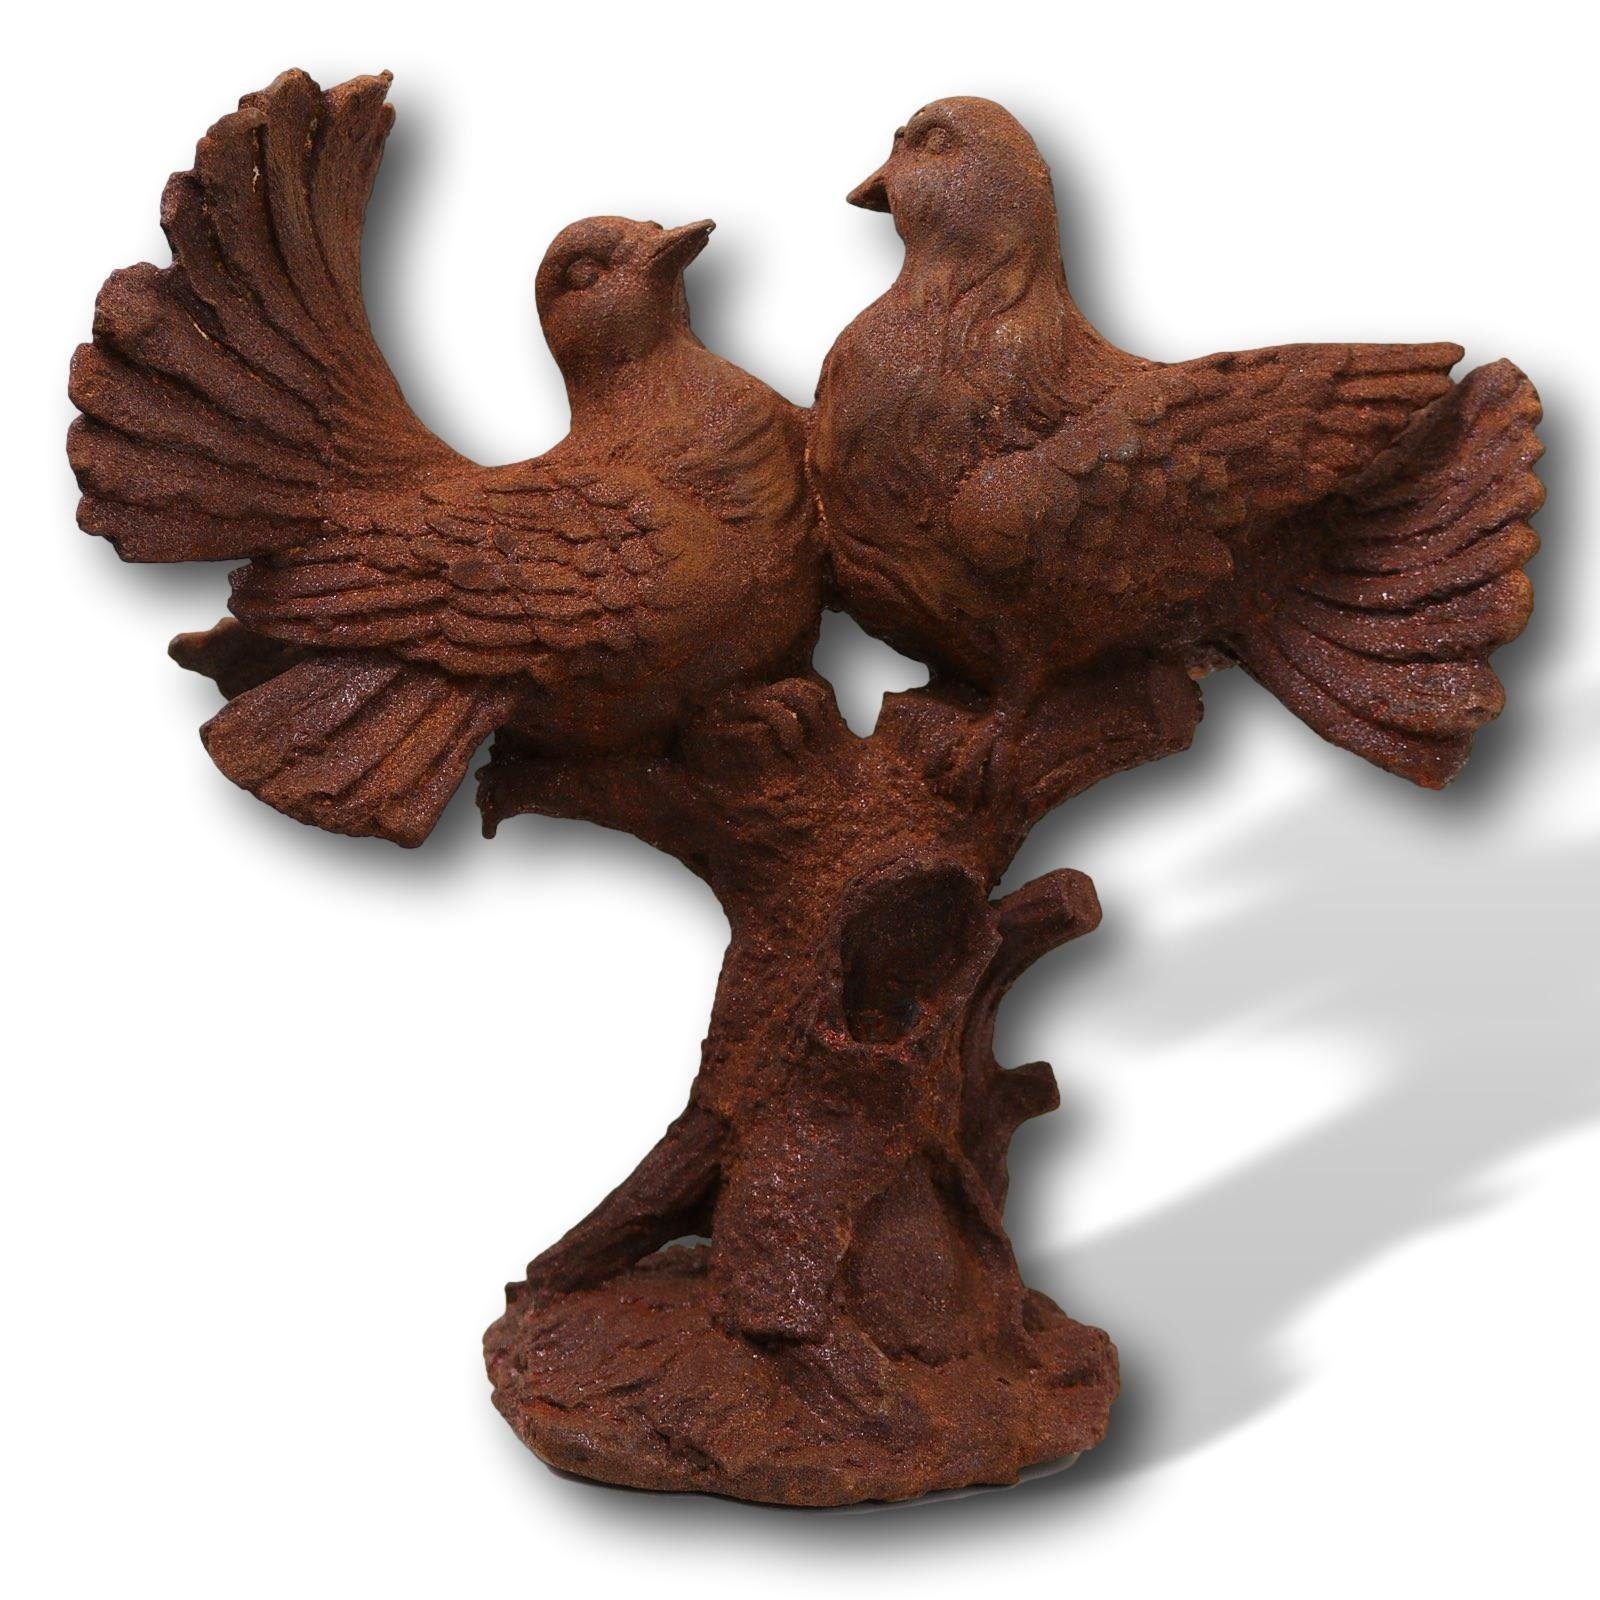 Aubaho Gartenfigur Skulptur Turteltauben Vogel Rost Statue Tauben Eisen 30cm Figur Liebe